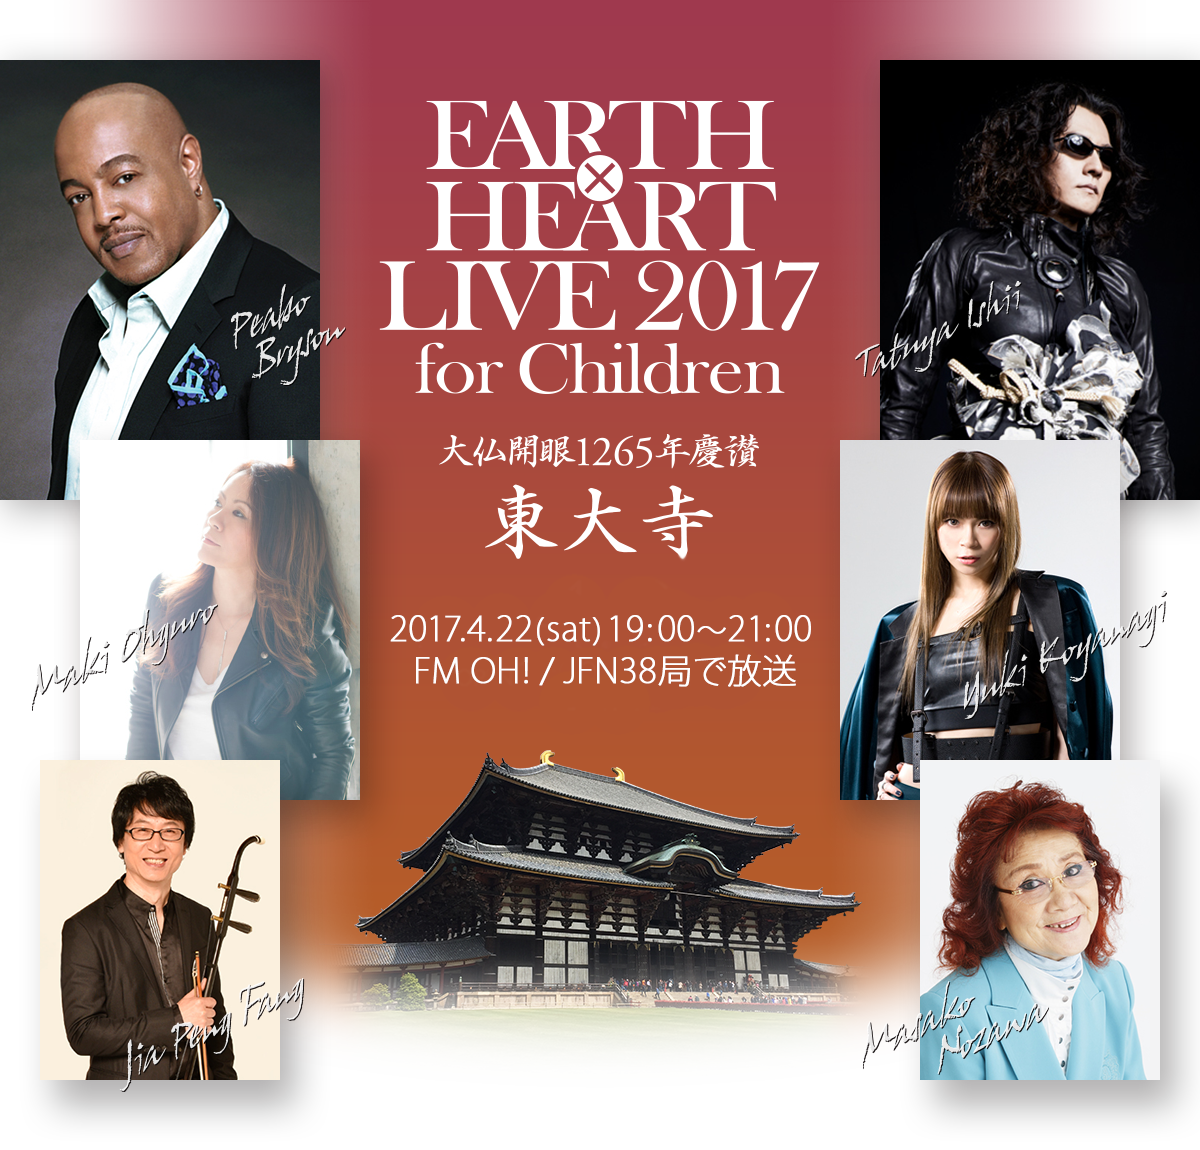 EARTH×HEART LIVE 2017 for Children 大仏開眼1265年慶讃 2017年4月9日(日) 奈良 東大寺にて開催！